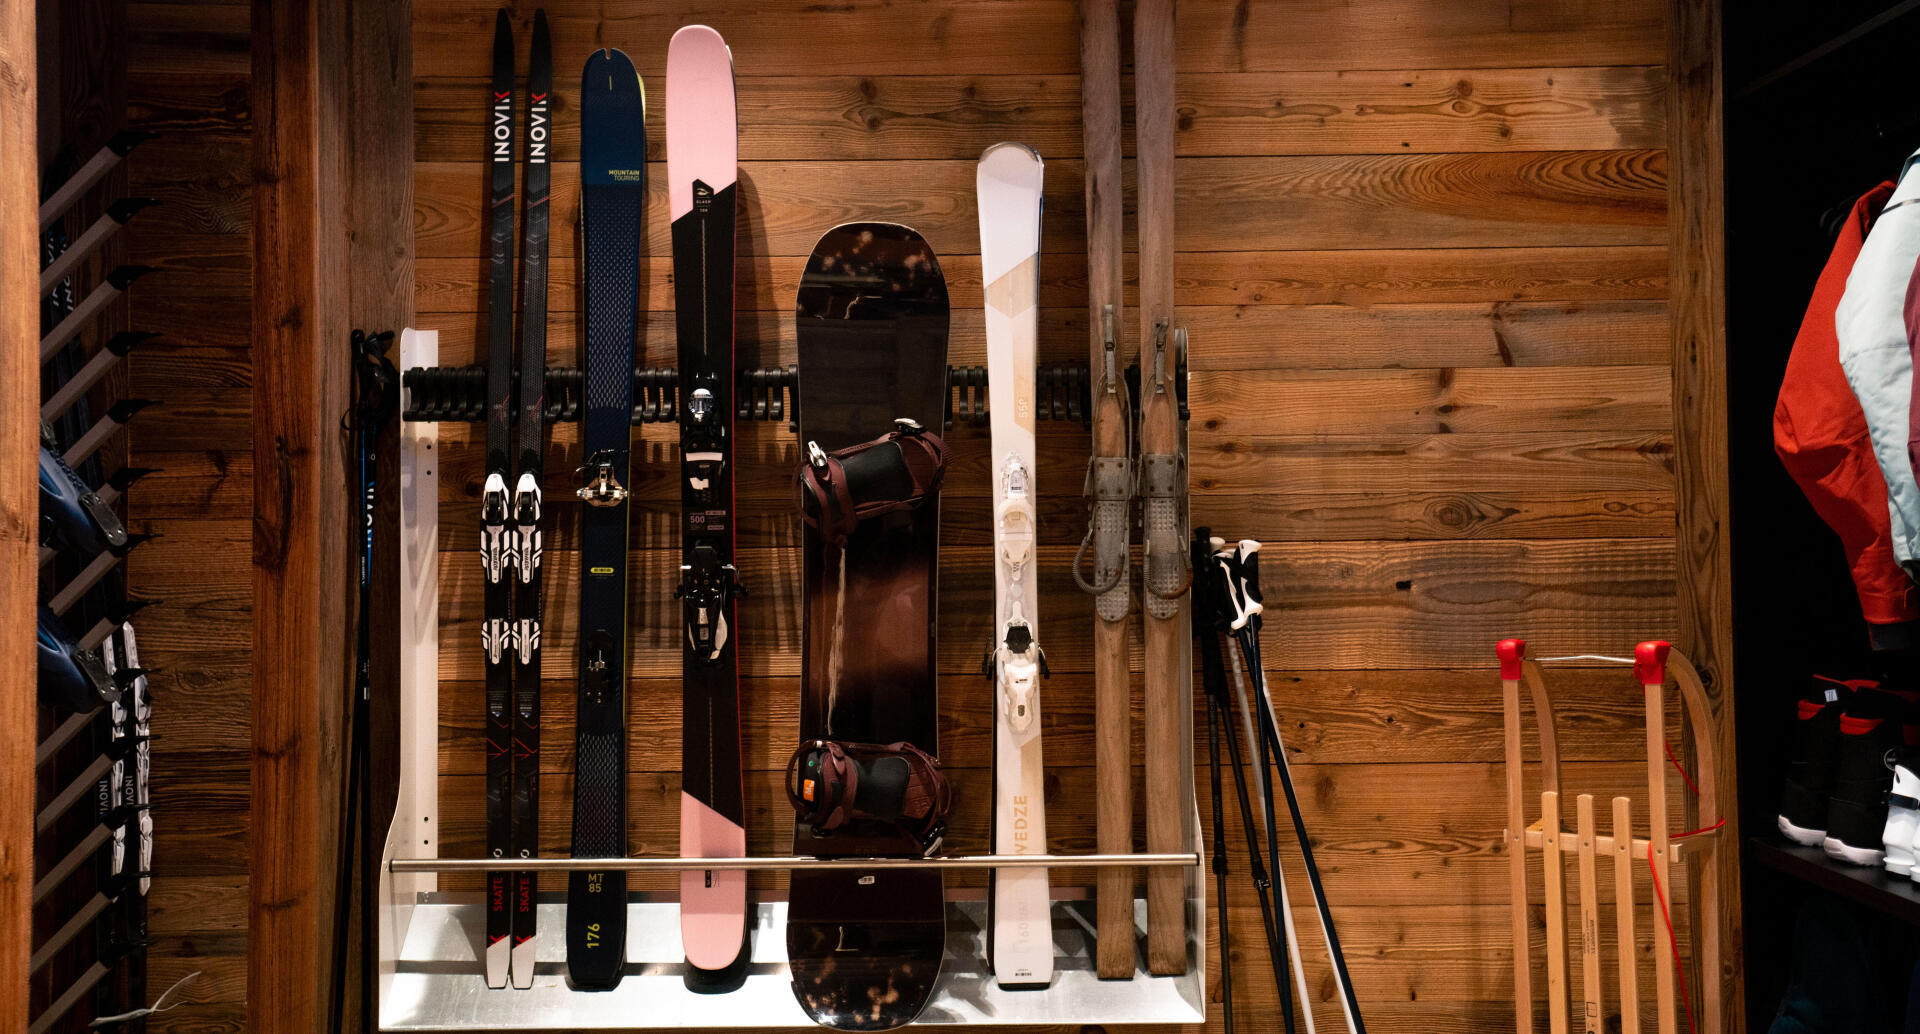 Pourquoi faire un fartage des skis en fin de saison ?